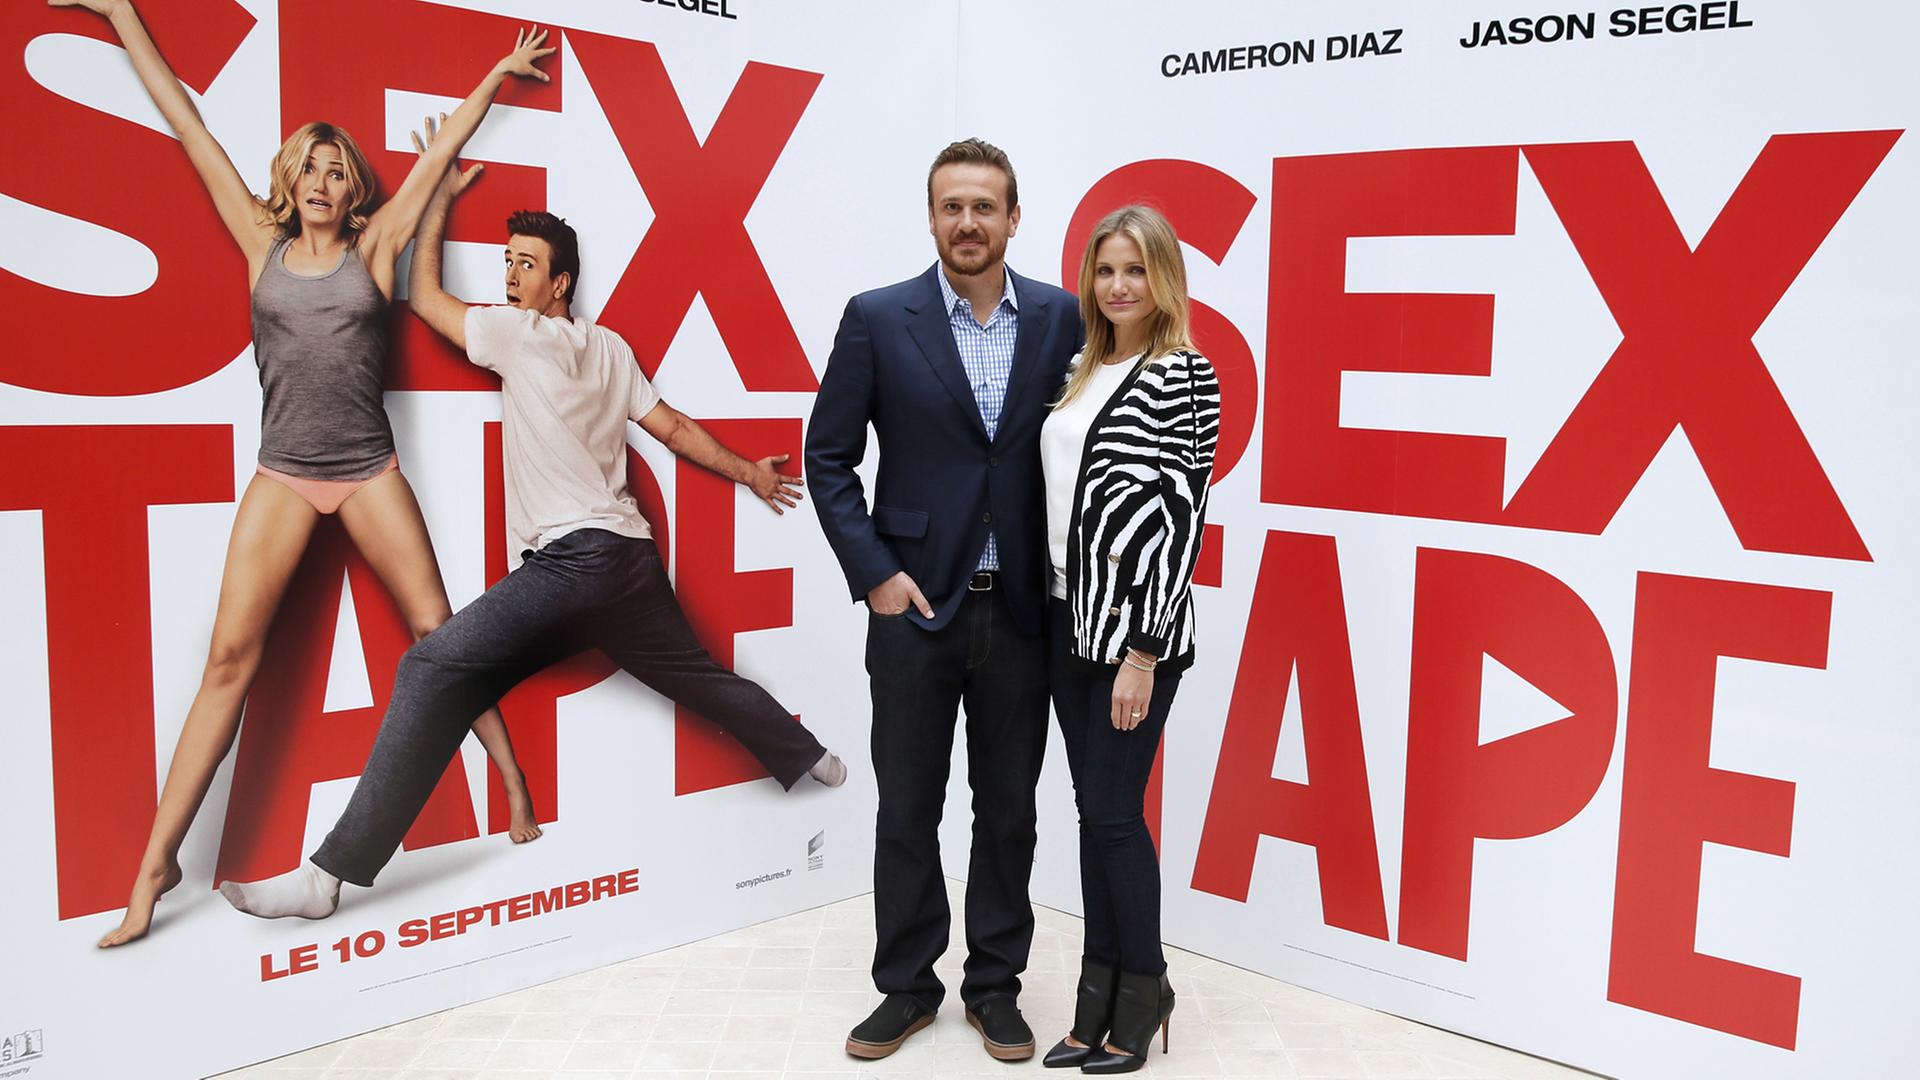 Die Hauptdarsteller Jason Segel und Cameron Diaz posieren vor ihrem eigenen Plakat zum Kinofilm "Sex Tape".